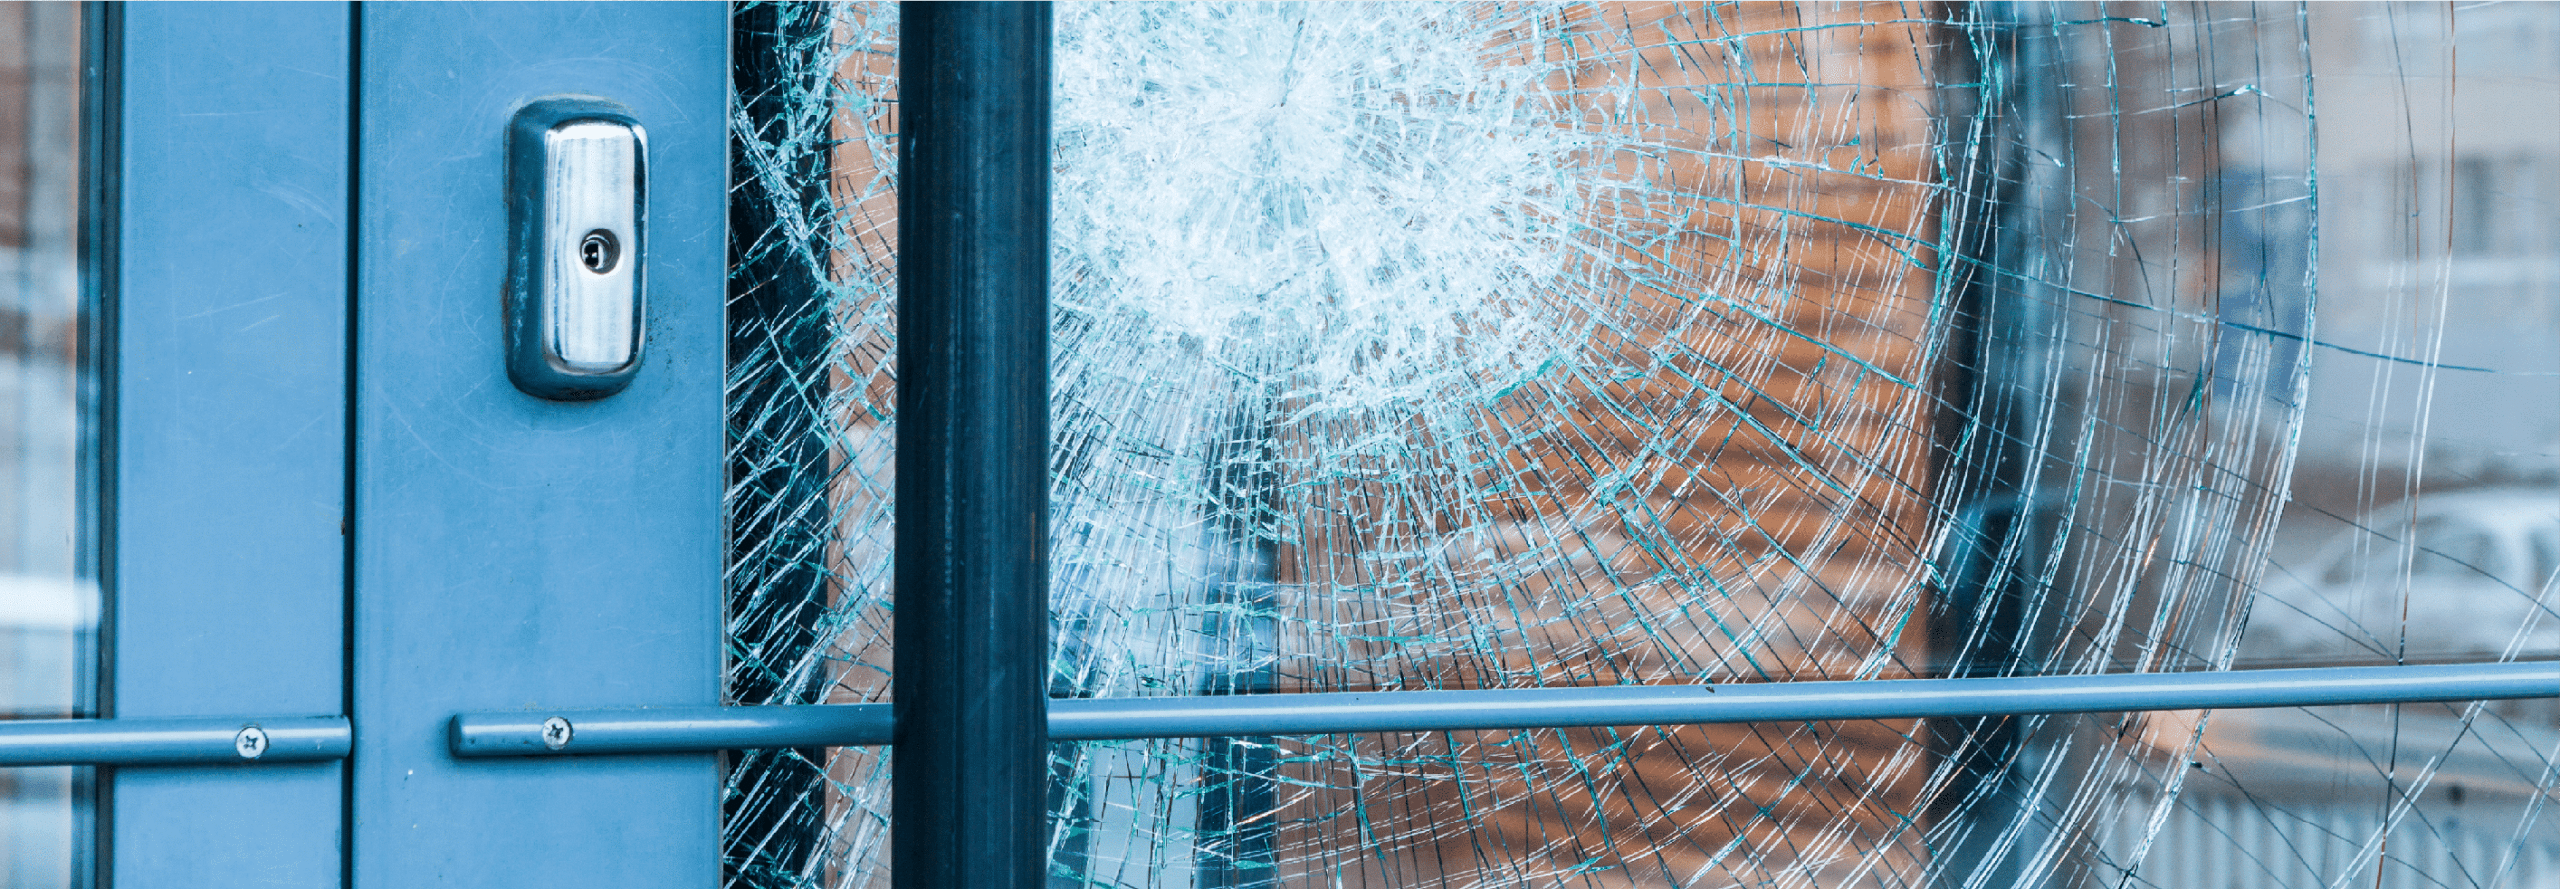 Broken glass front door